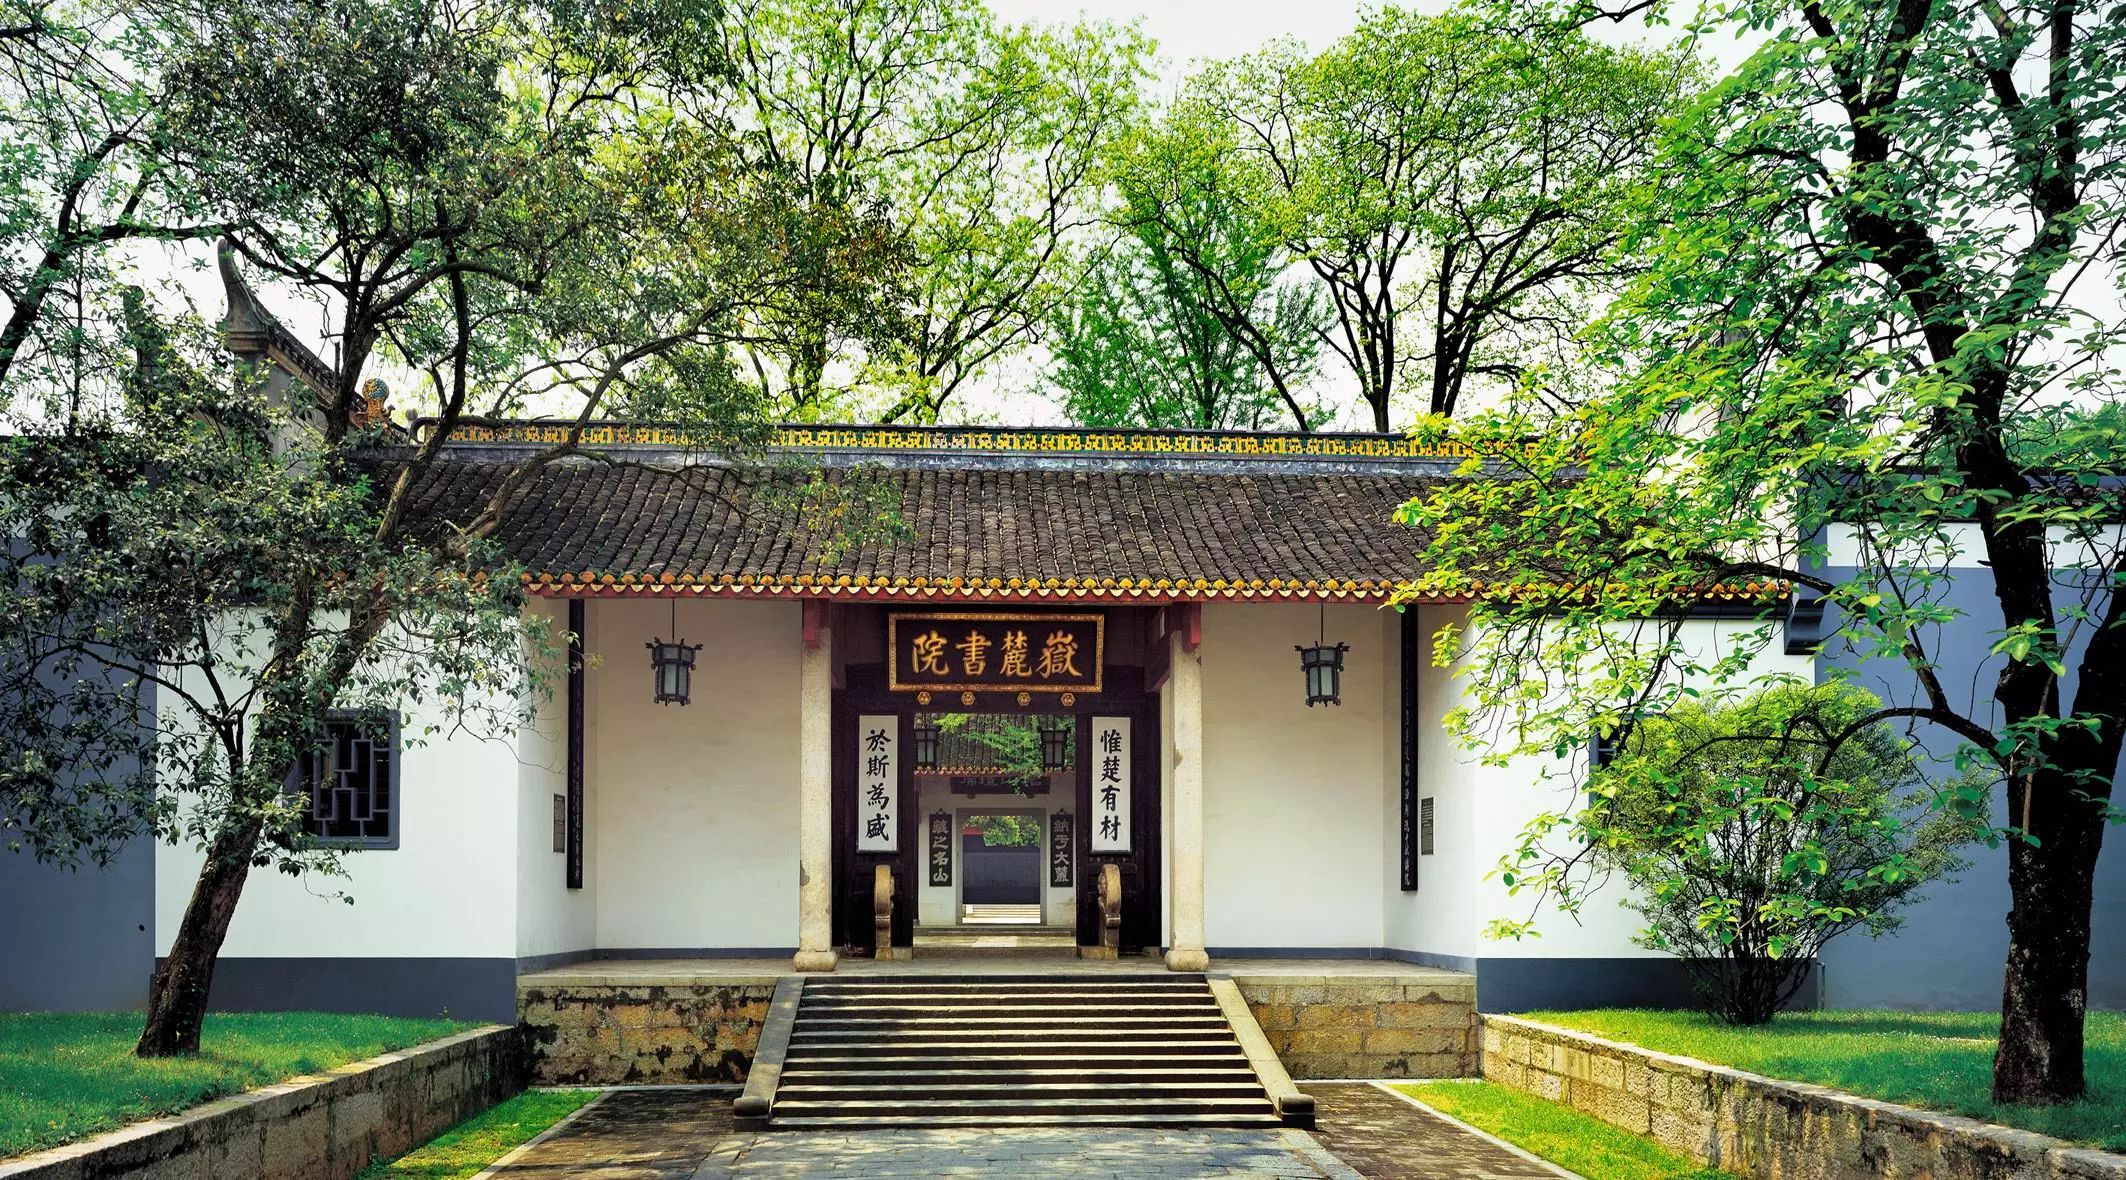 岳麓书院是古代汉族书院建筑,属于中国历史上著名的四大书院之一